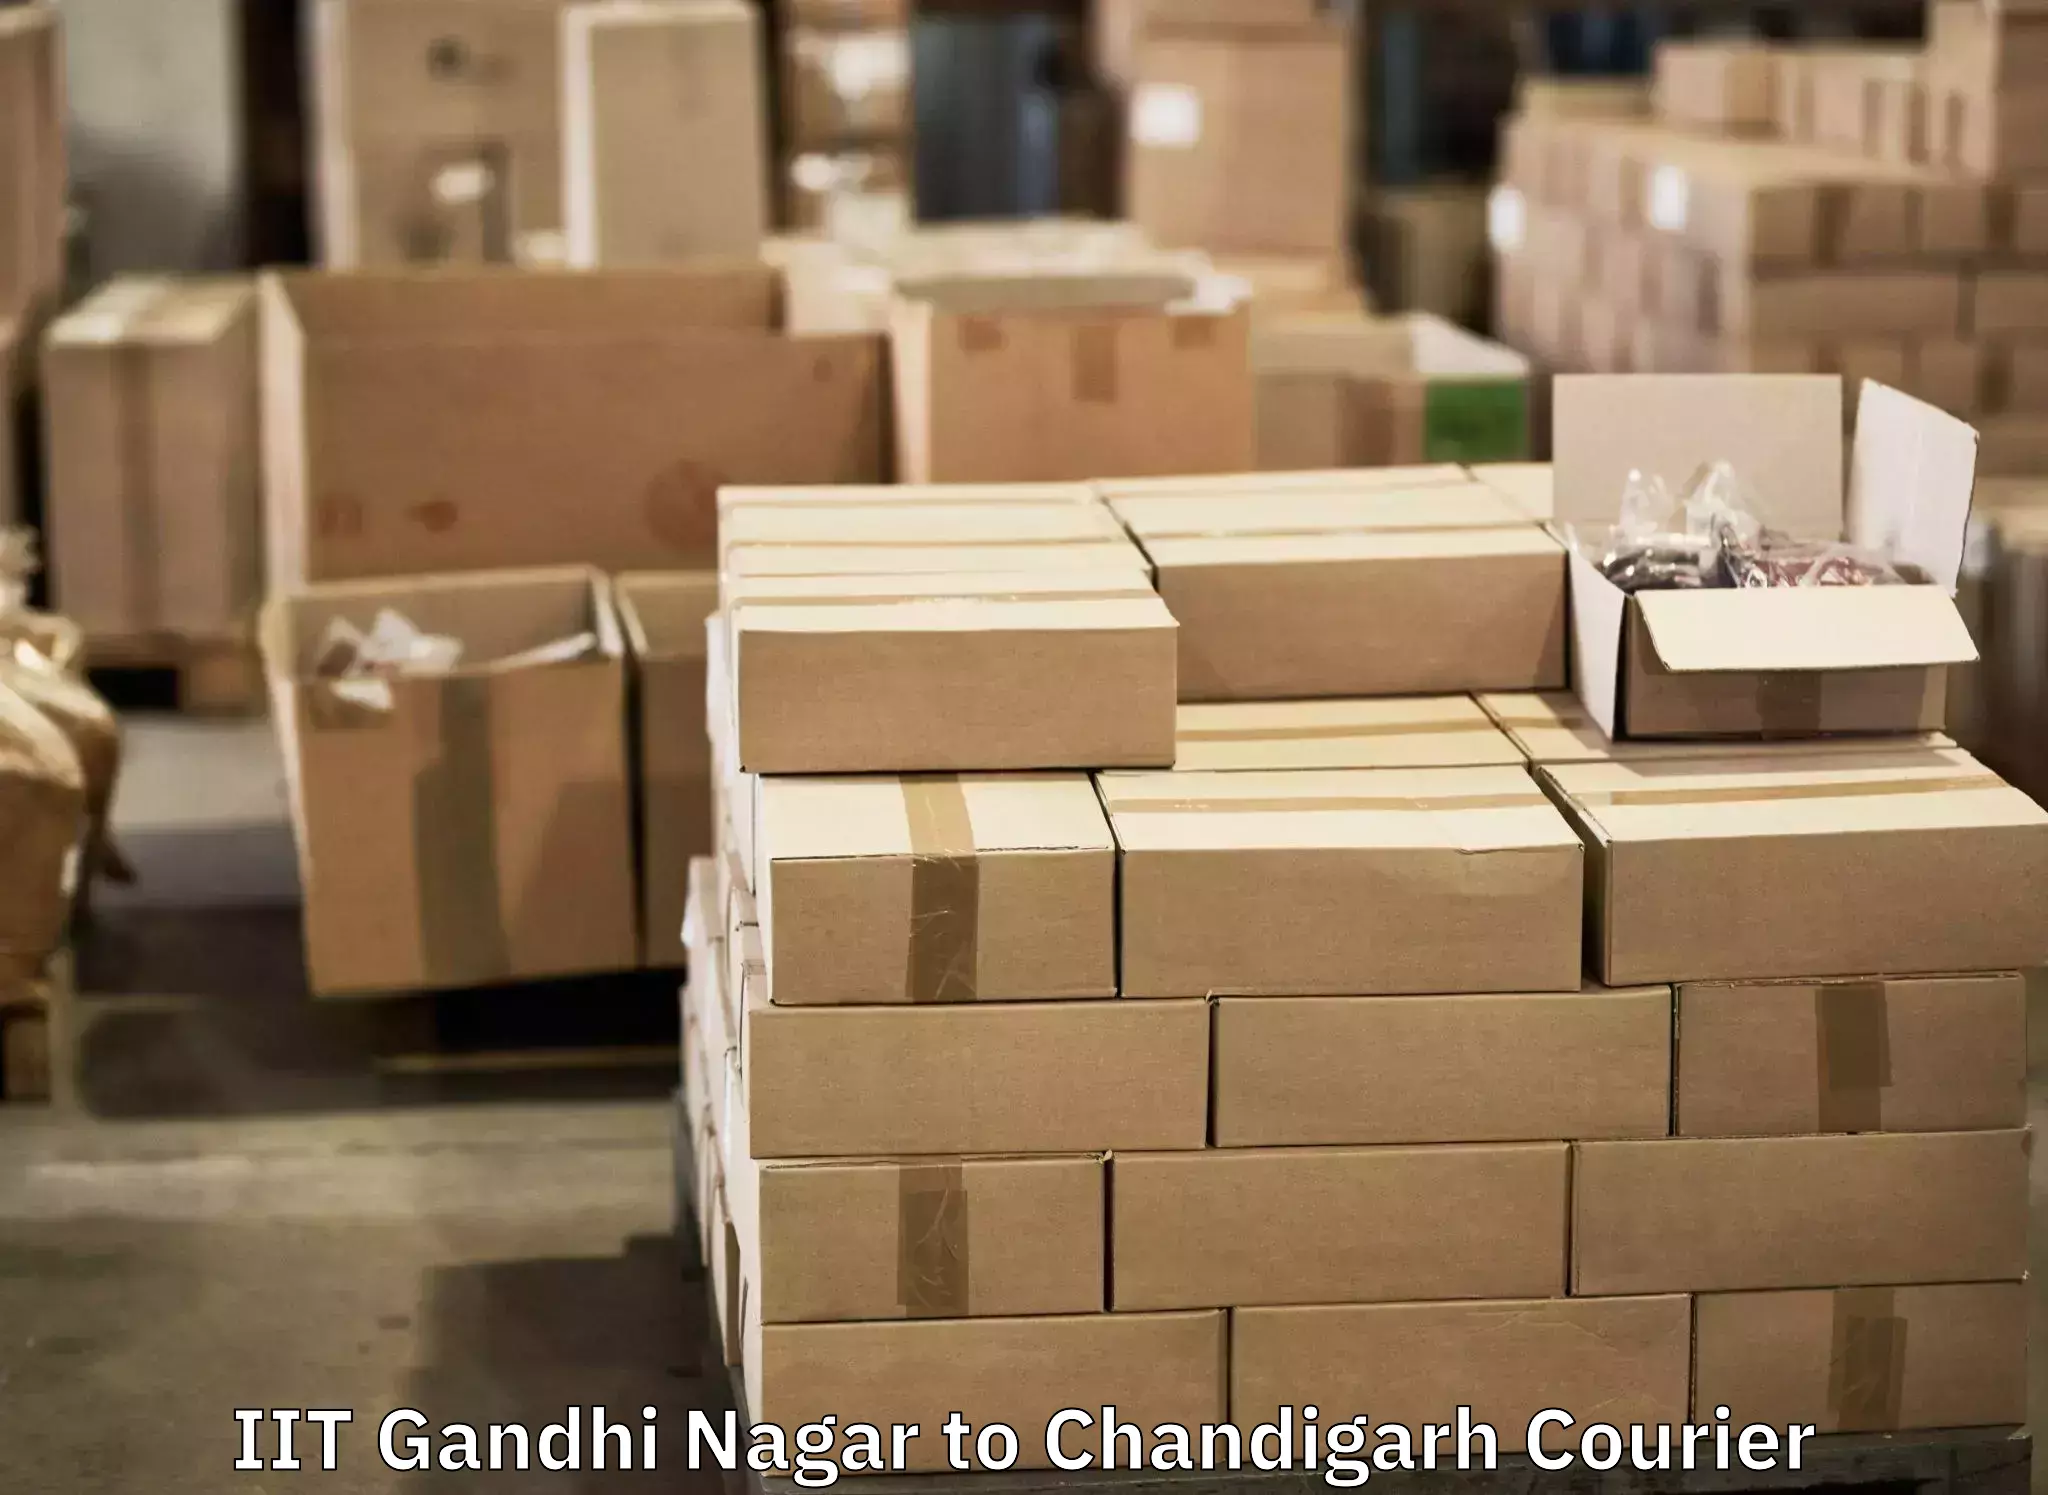 Luggage transport service IIT Gandhi Nagar to Chandigarh